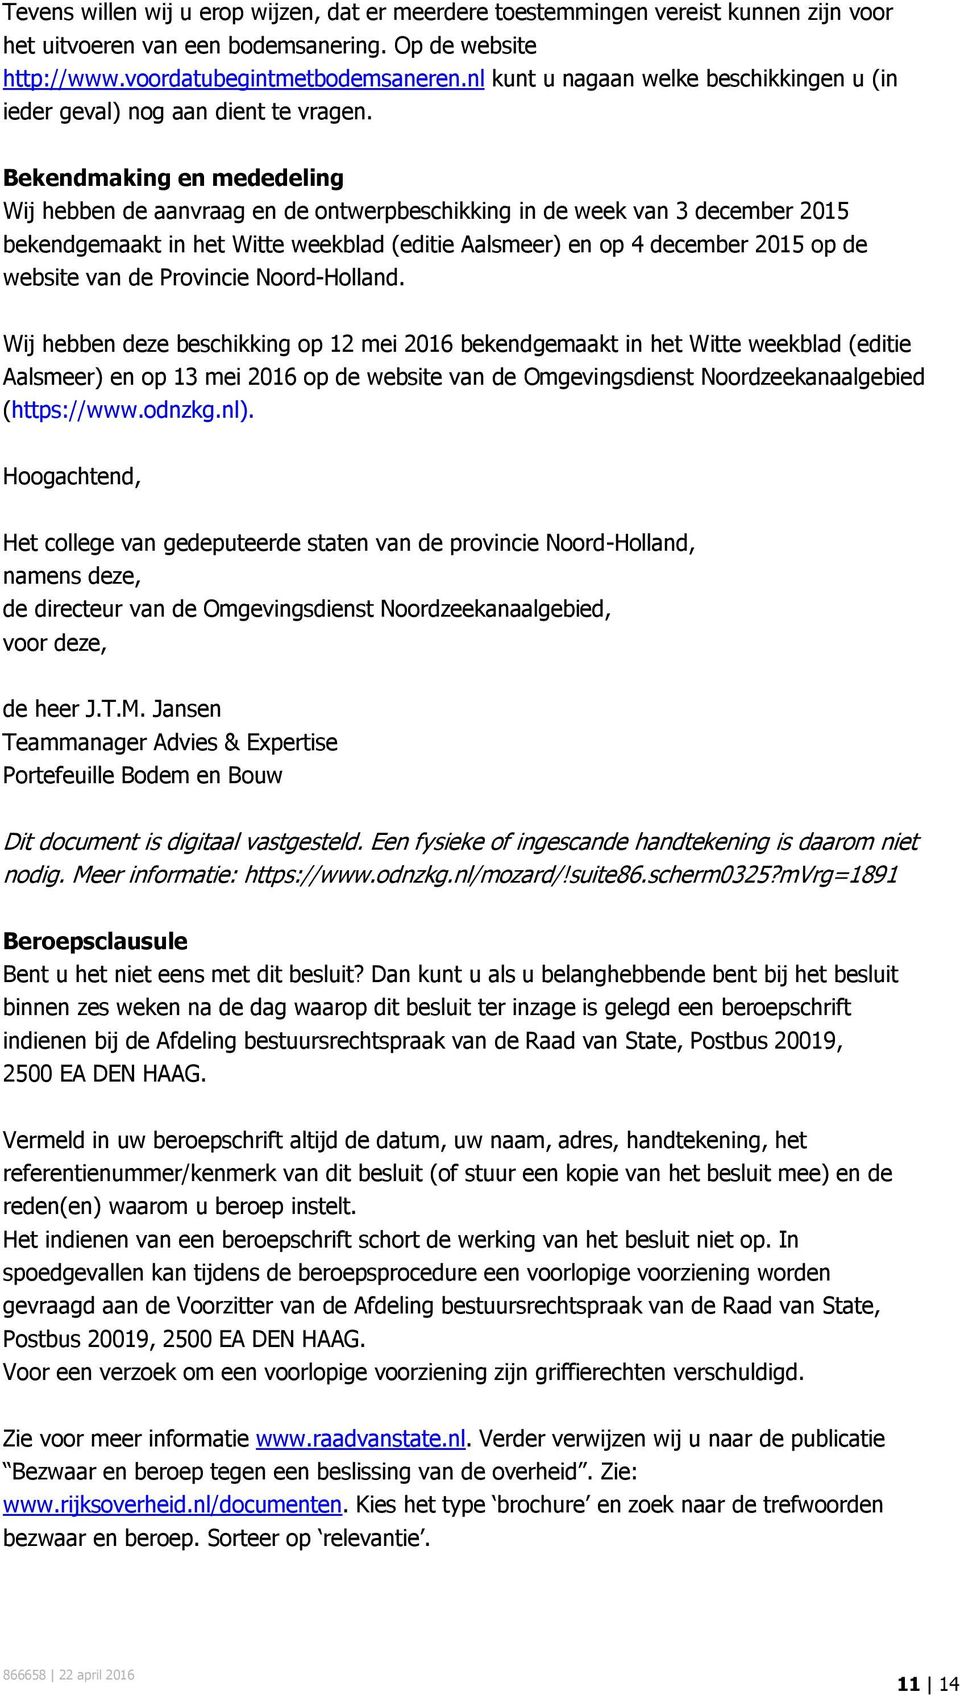 Bekendmaking en mededeling Wij hebben de aanvraag en de ontwerpbeschikking in de week van 3 december 2015 bekendgemaakt in het Witte weekblad (editie Aalsmeer) en op 4 december 2015 op de website van